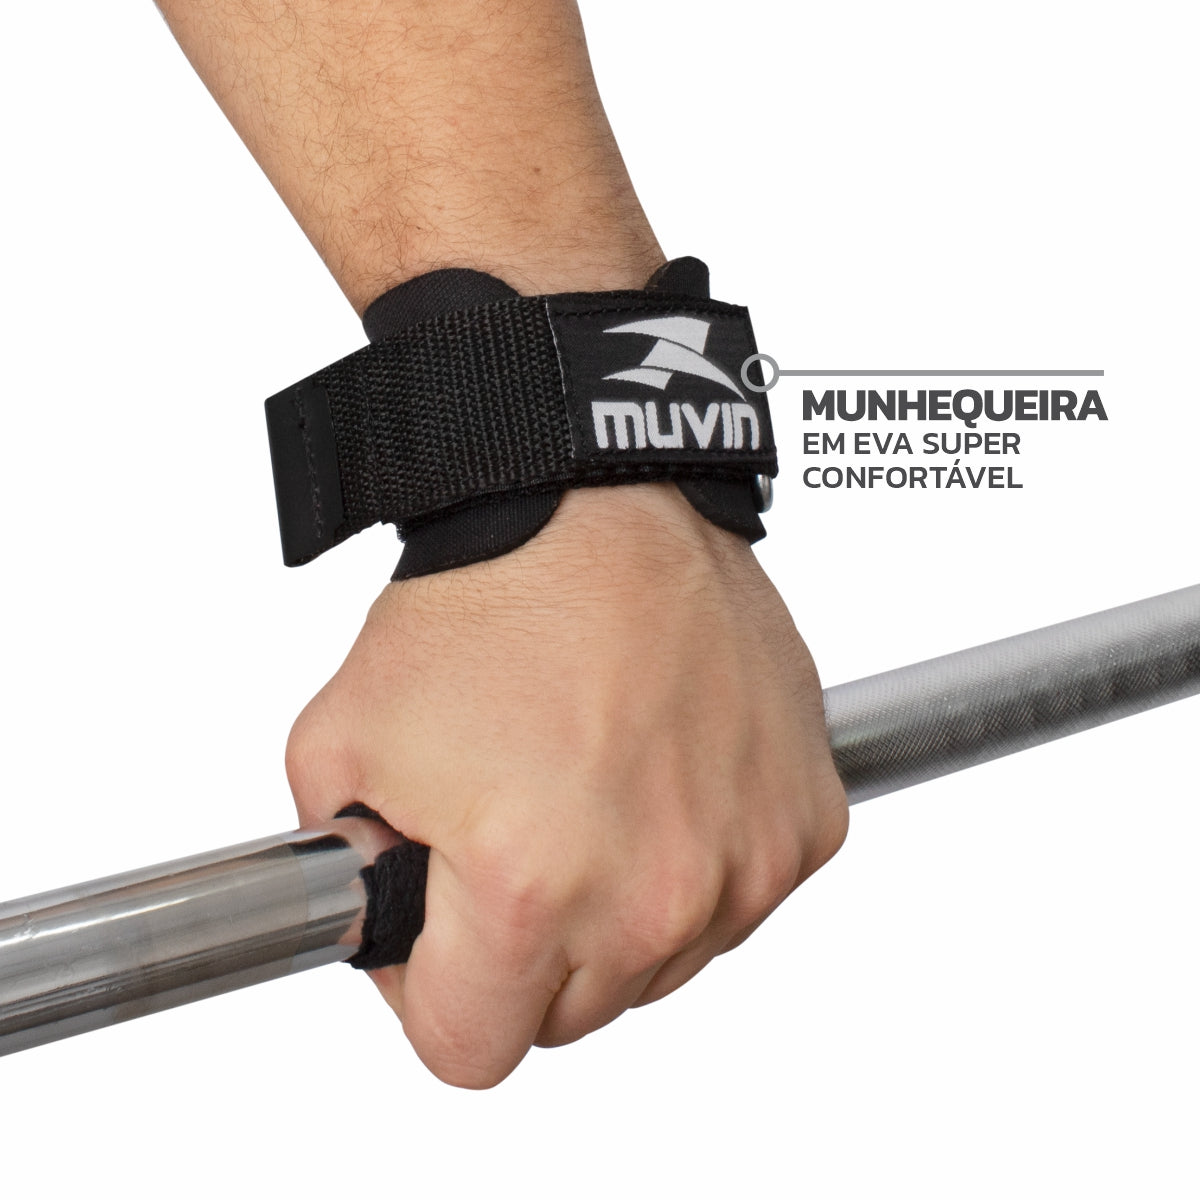 Strap de Musculação com Munhequeira - STM-0400